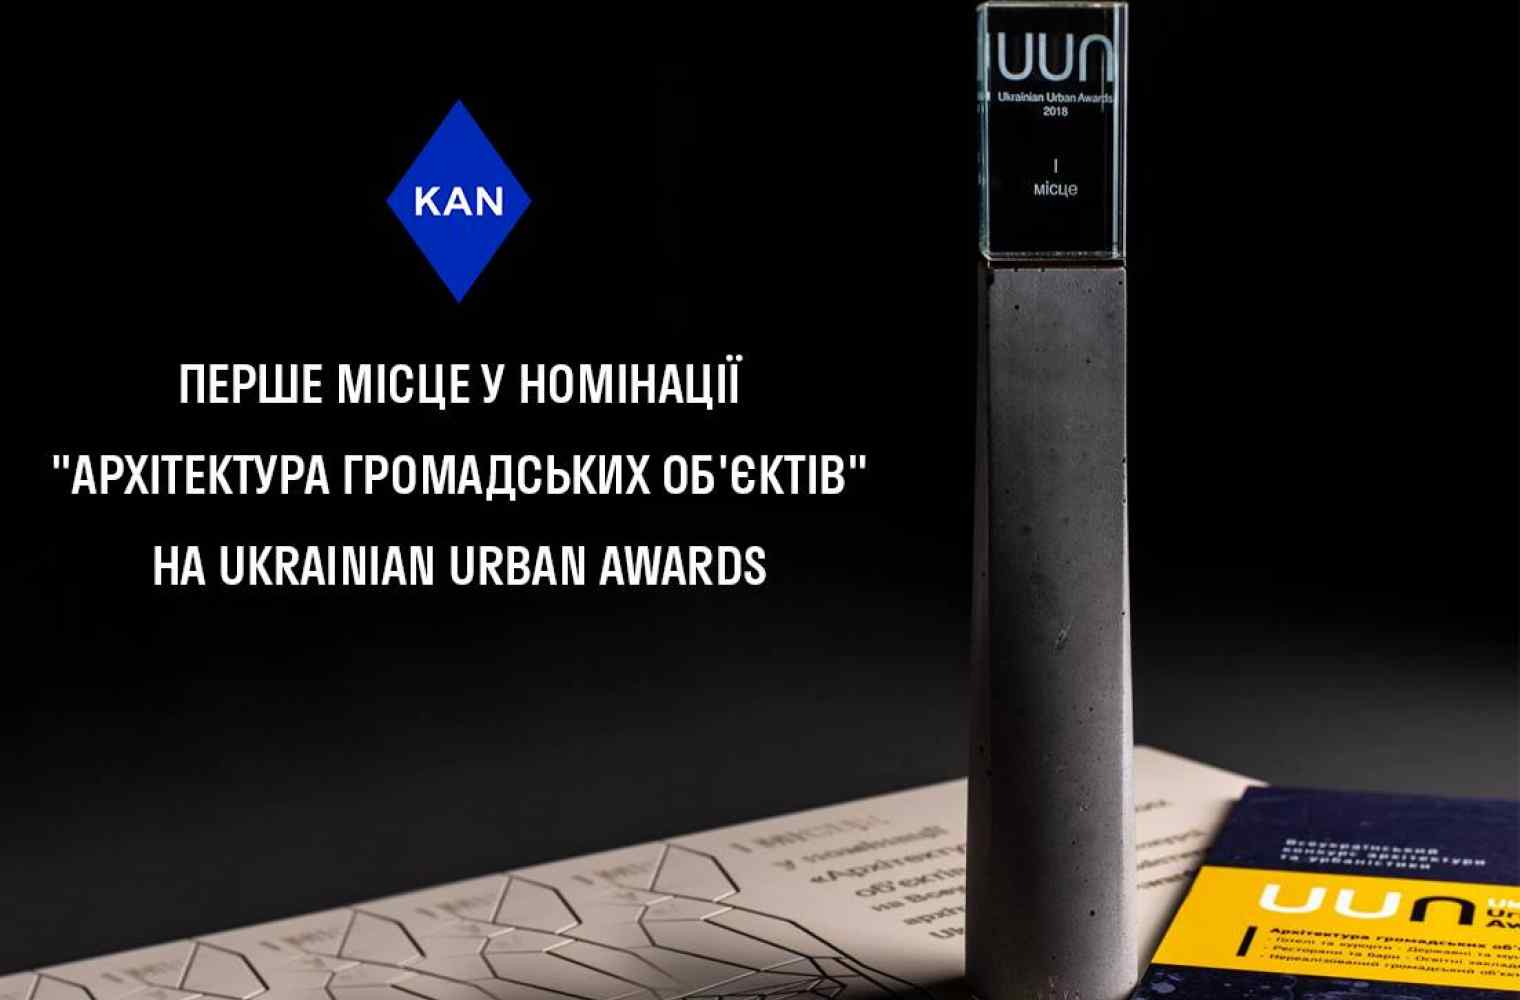 1 место от Ukrainian Urban Awards за Печерскую Международную Школу